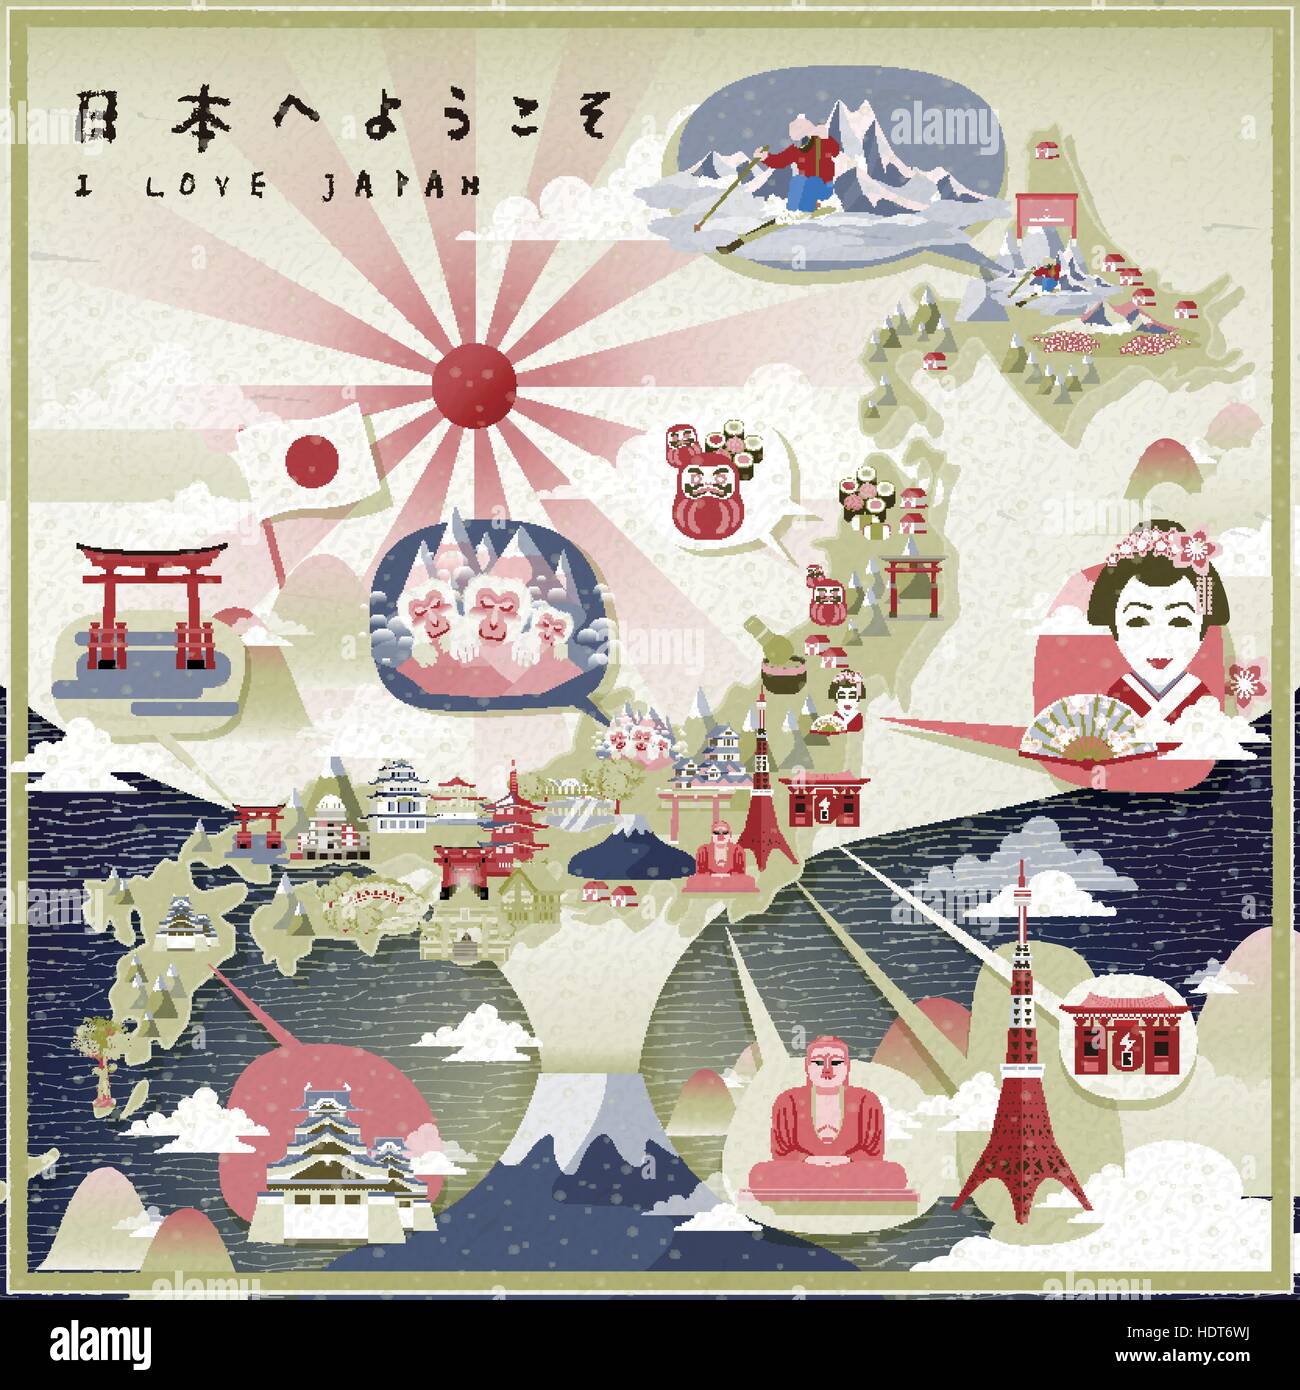 schöne Japan Reisekarte - willkommen nach Japan in japanischer Sprache oben links auf Stock Vektor